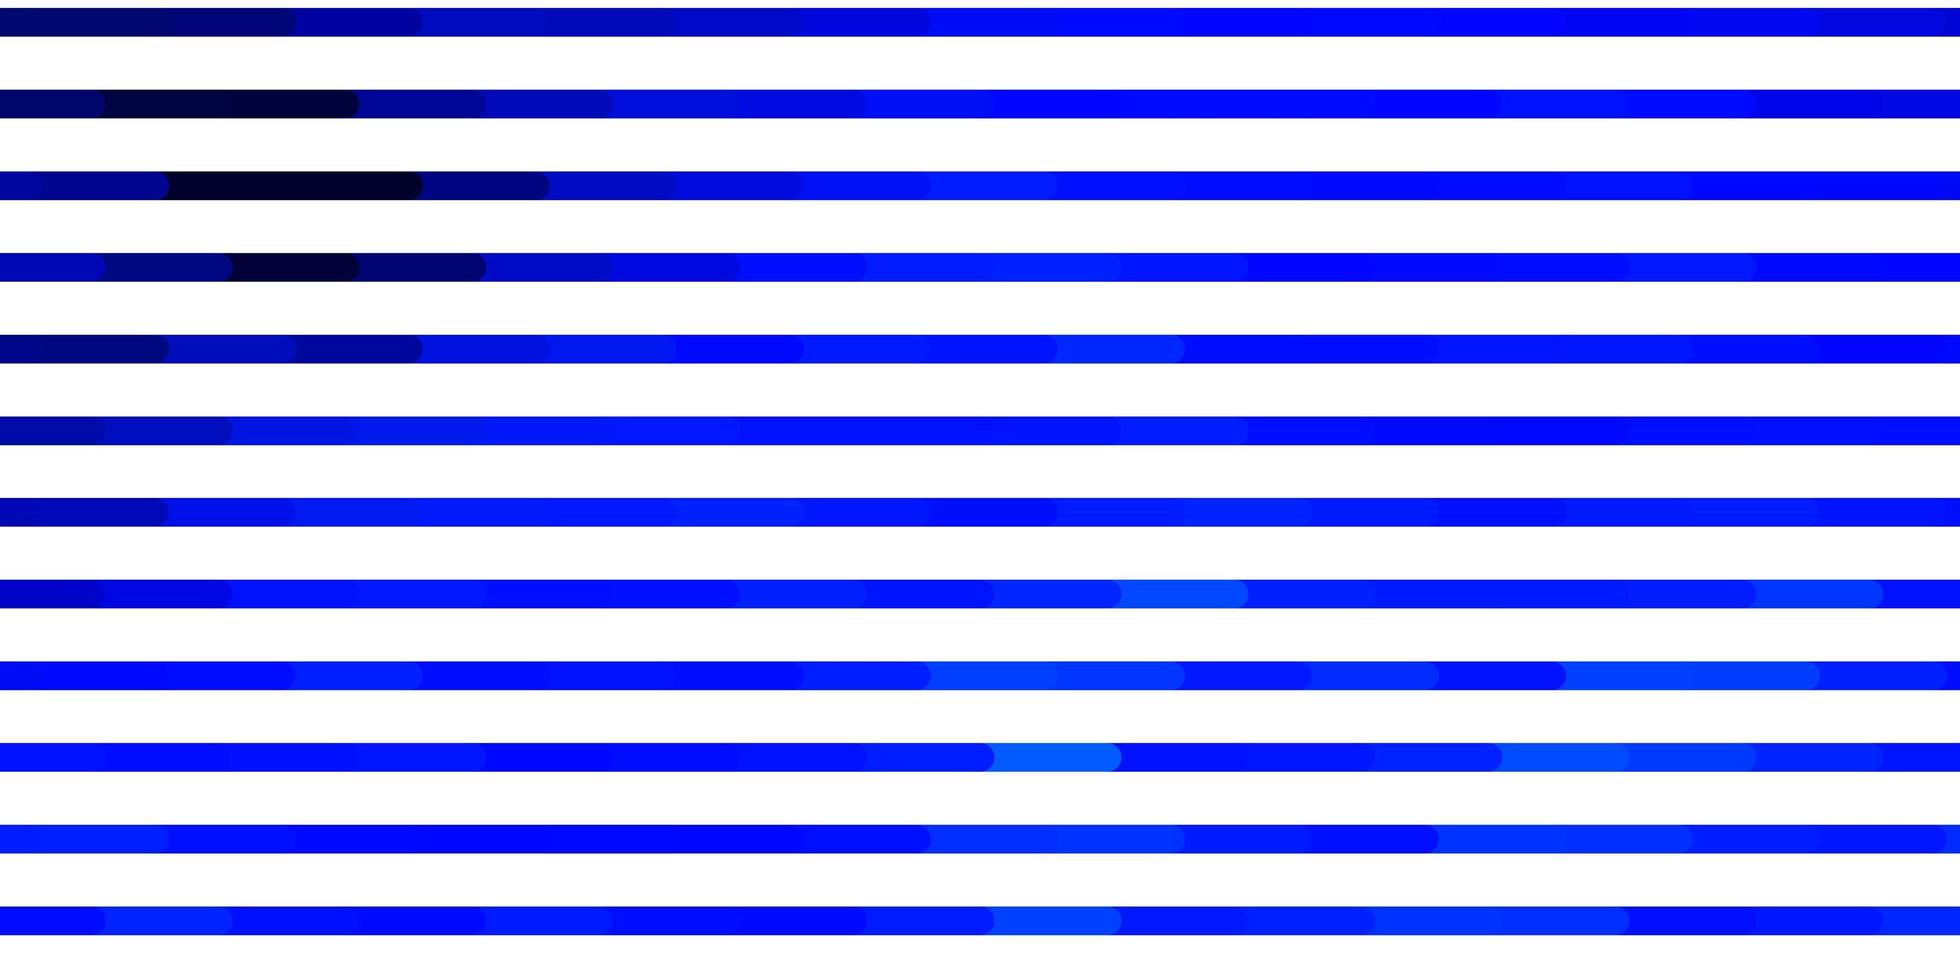 patrón de vector azul oscuro con líneas.